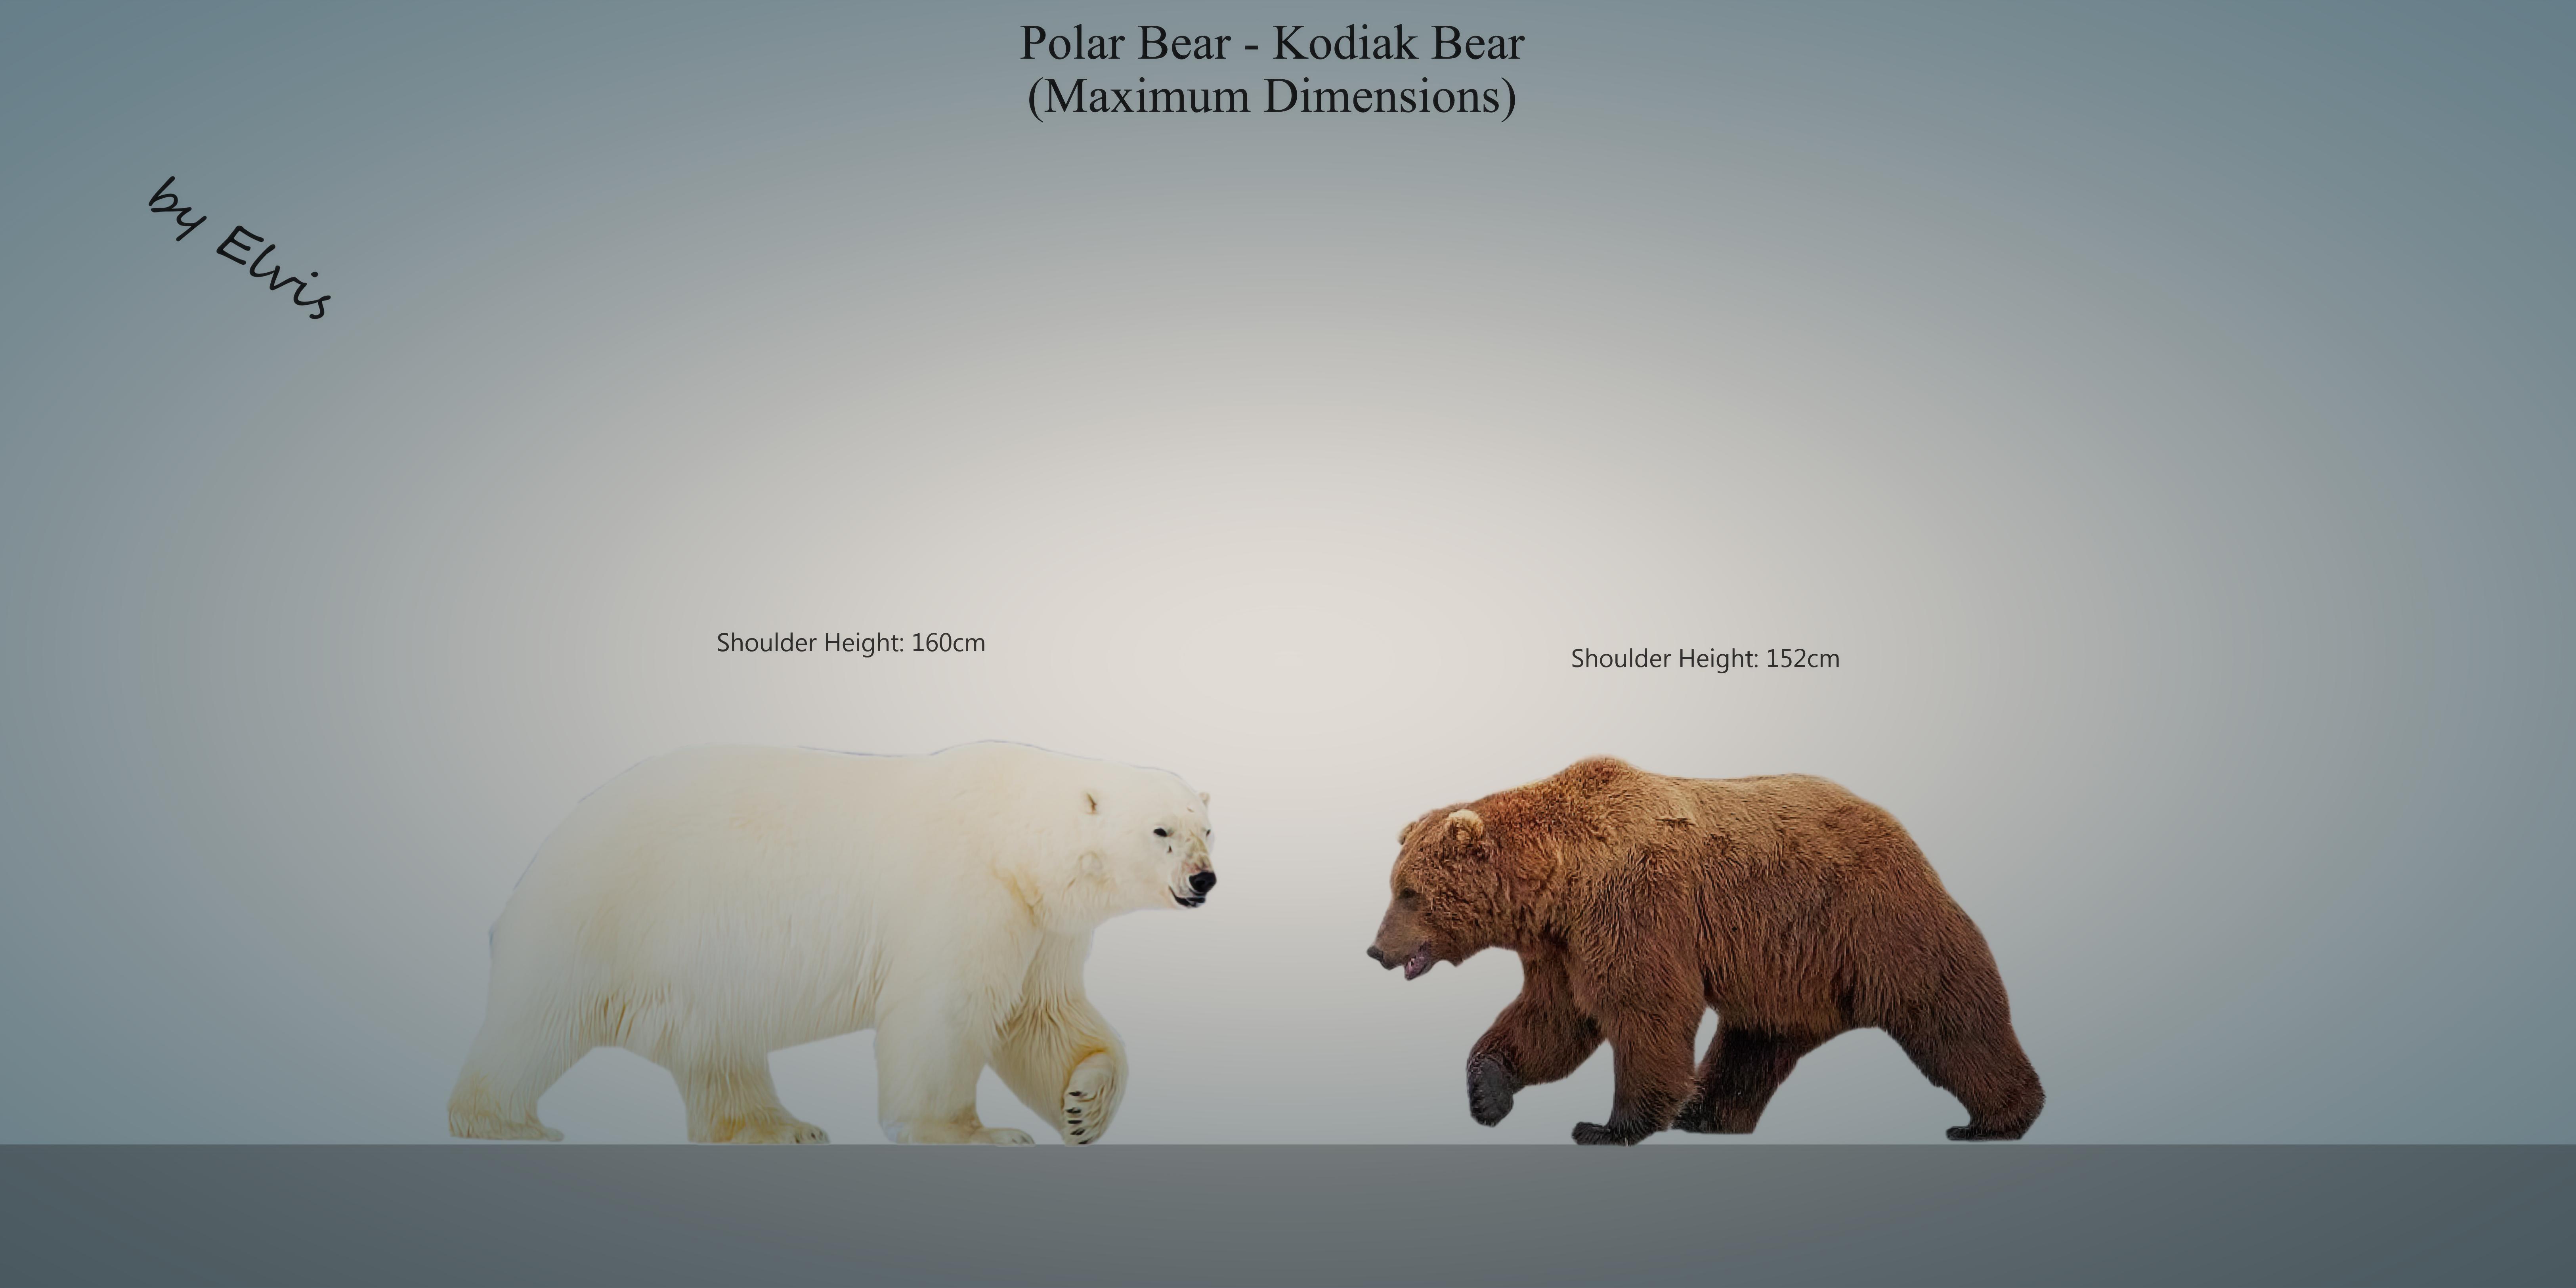 kodiak vs polar bear size